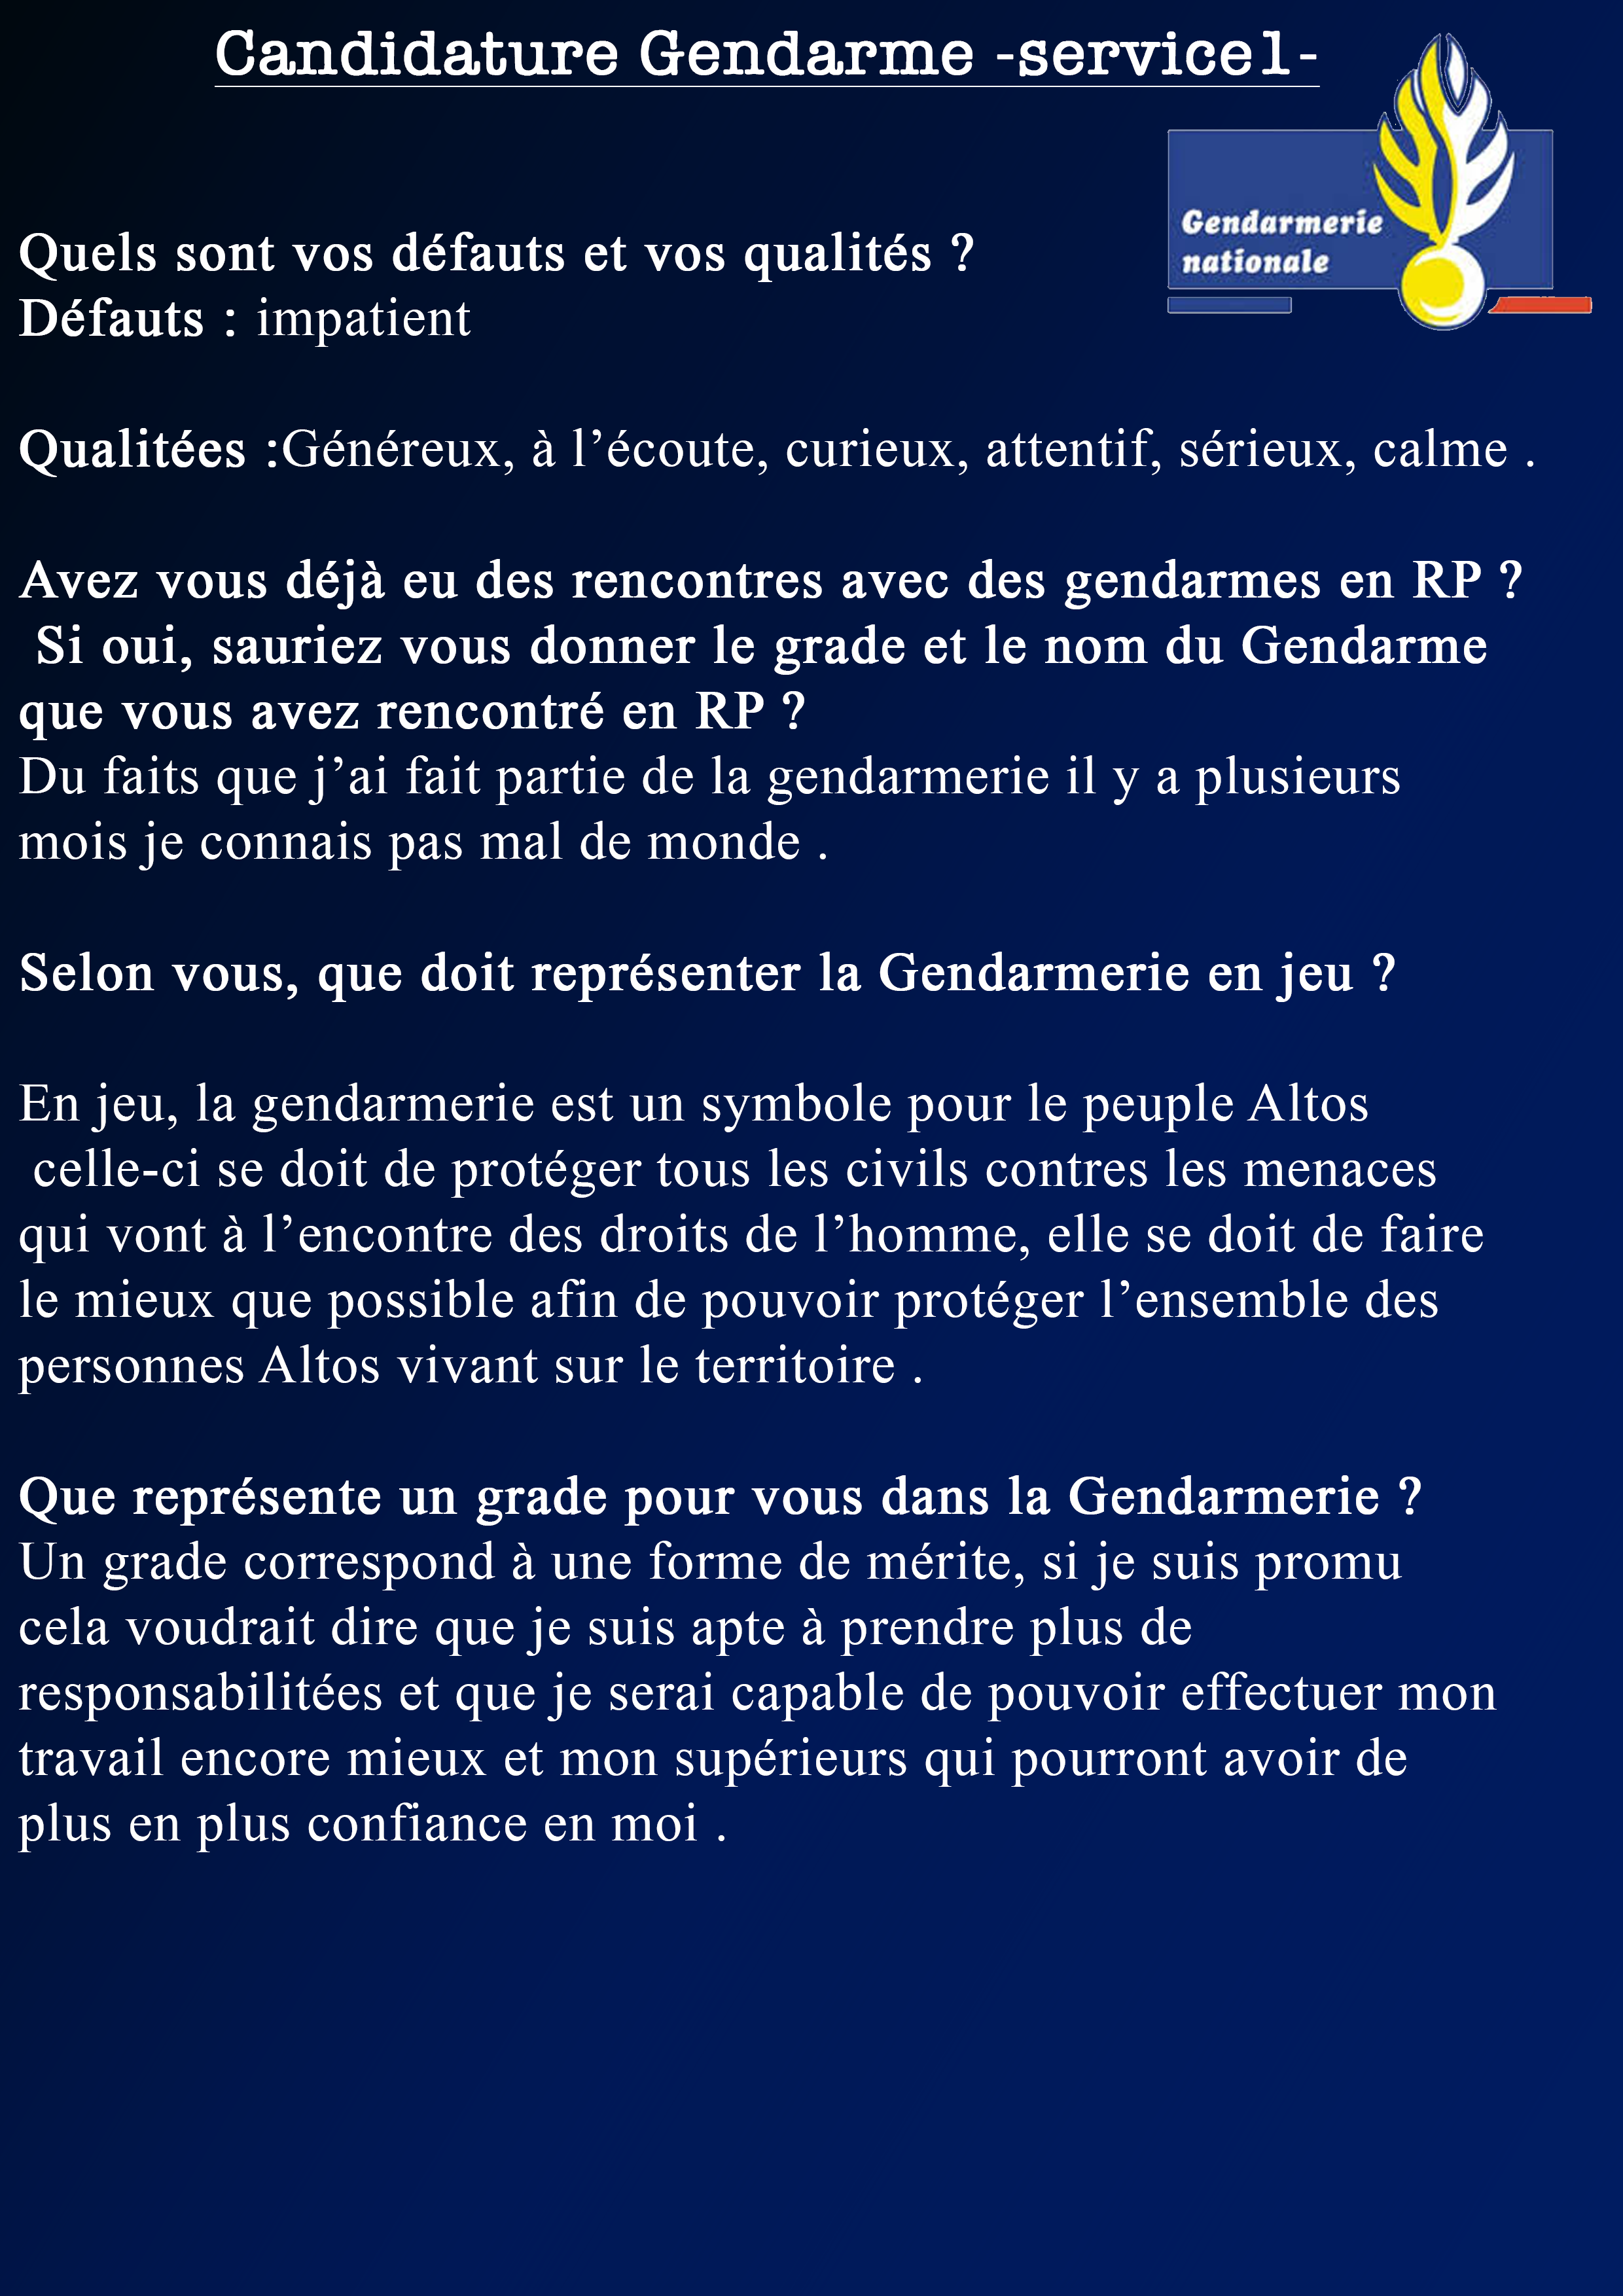 Candidature gendarme #3 V2.png